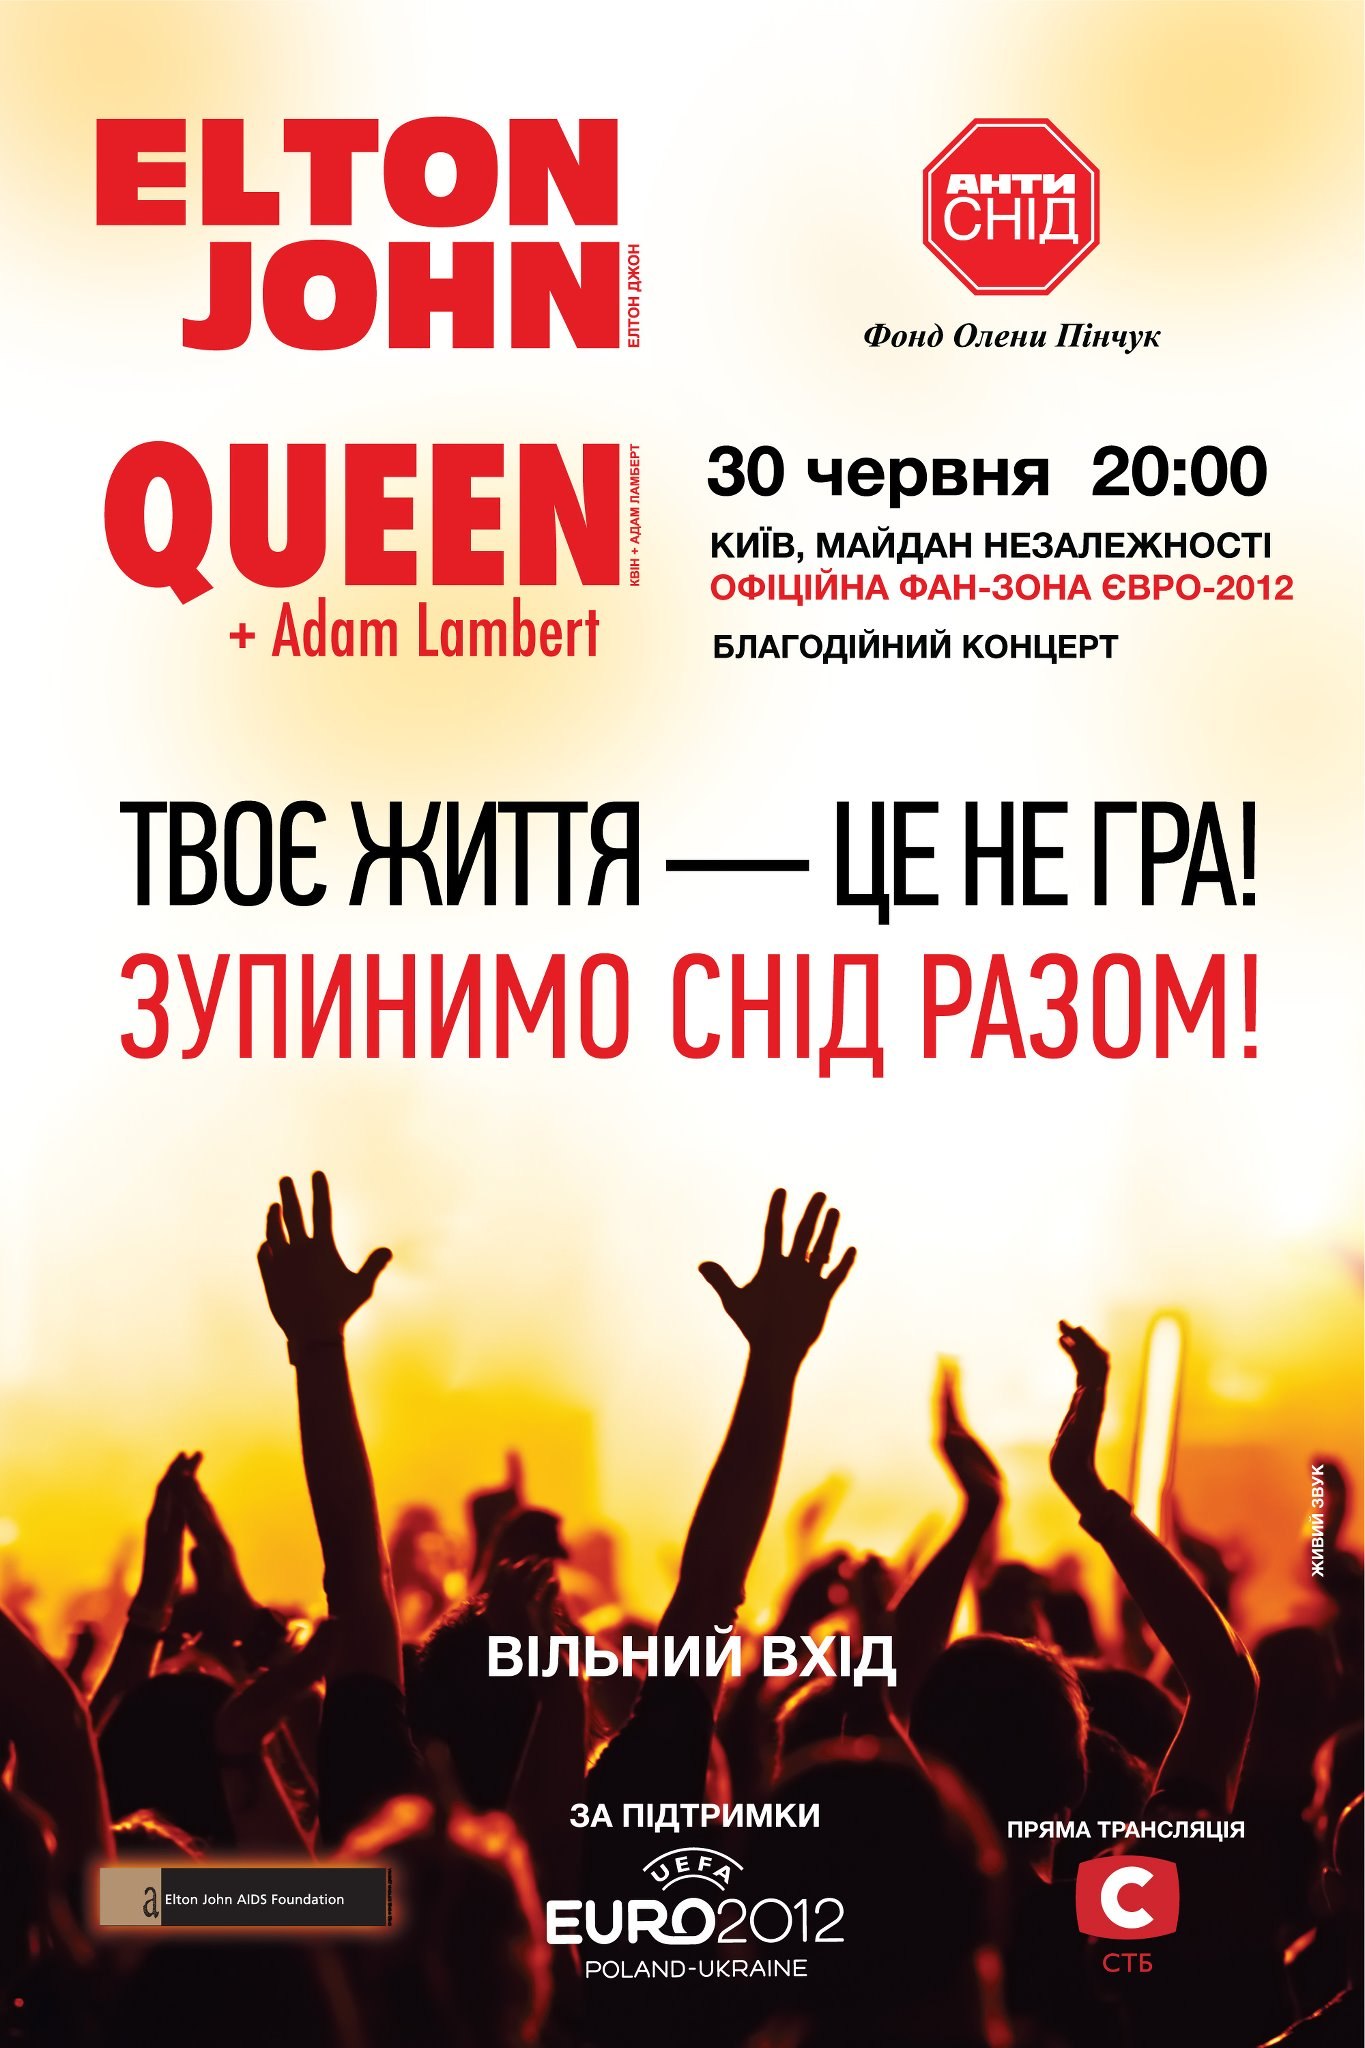 Queen + Adam Lambert in Kiev on 30.06.2012